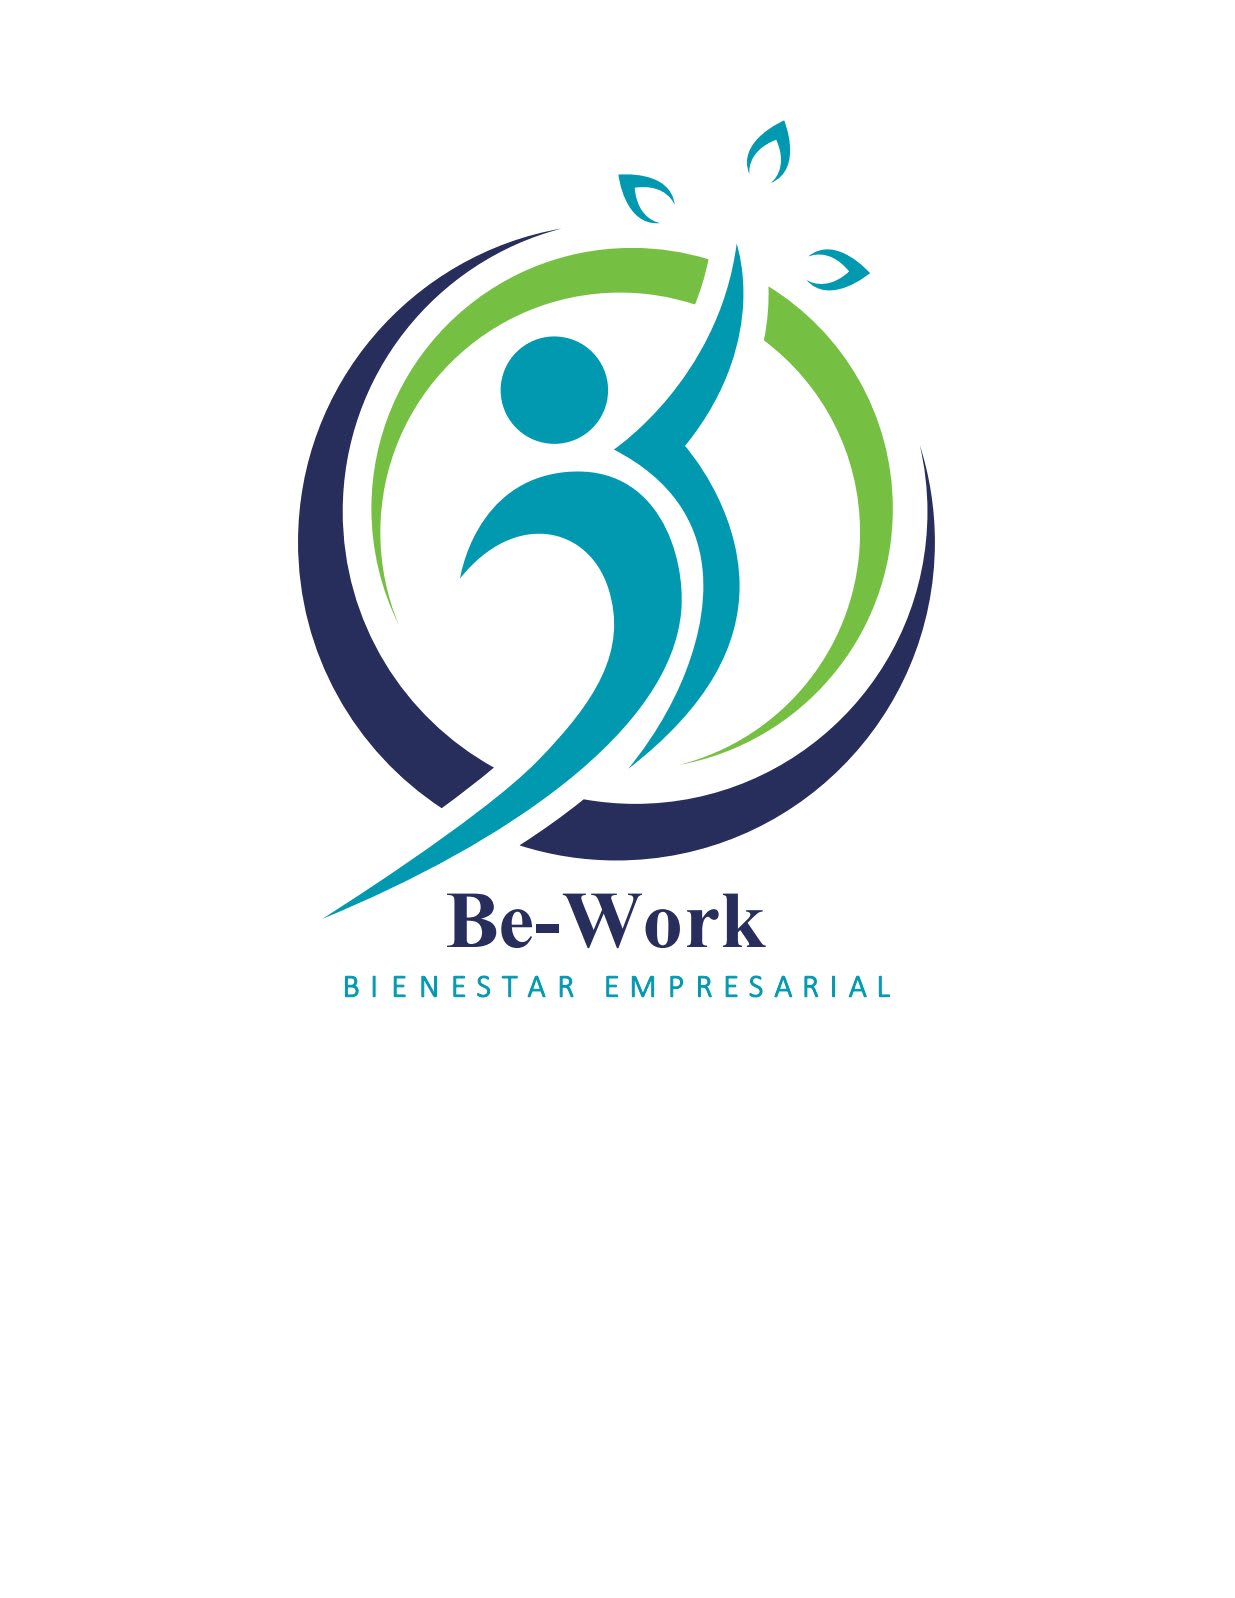 Be-Work Bienestar Empresarial